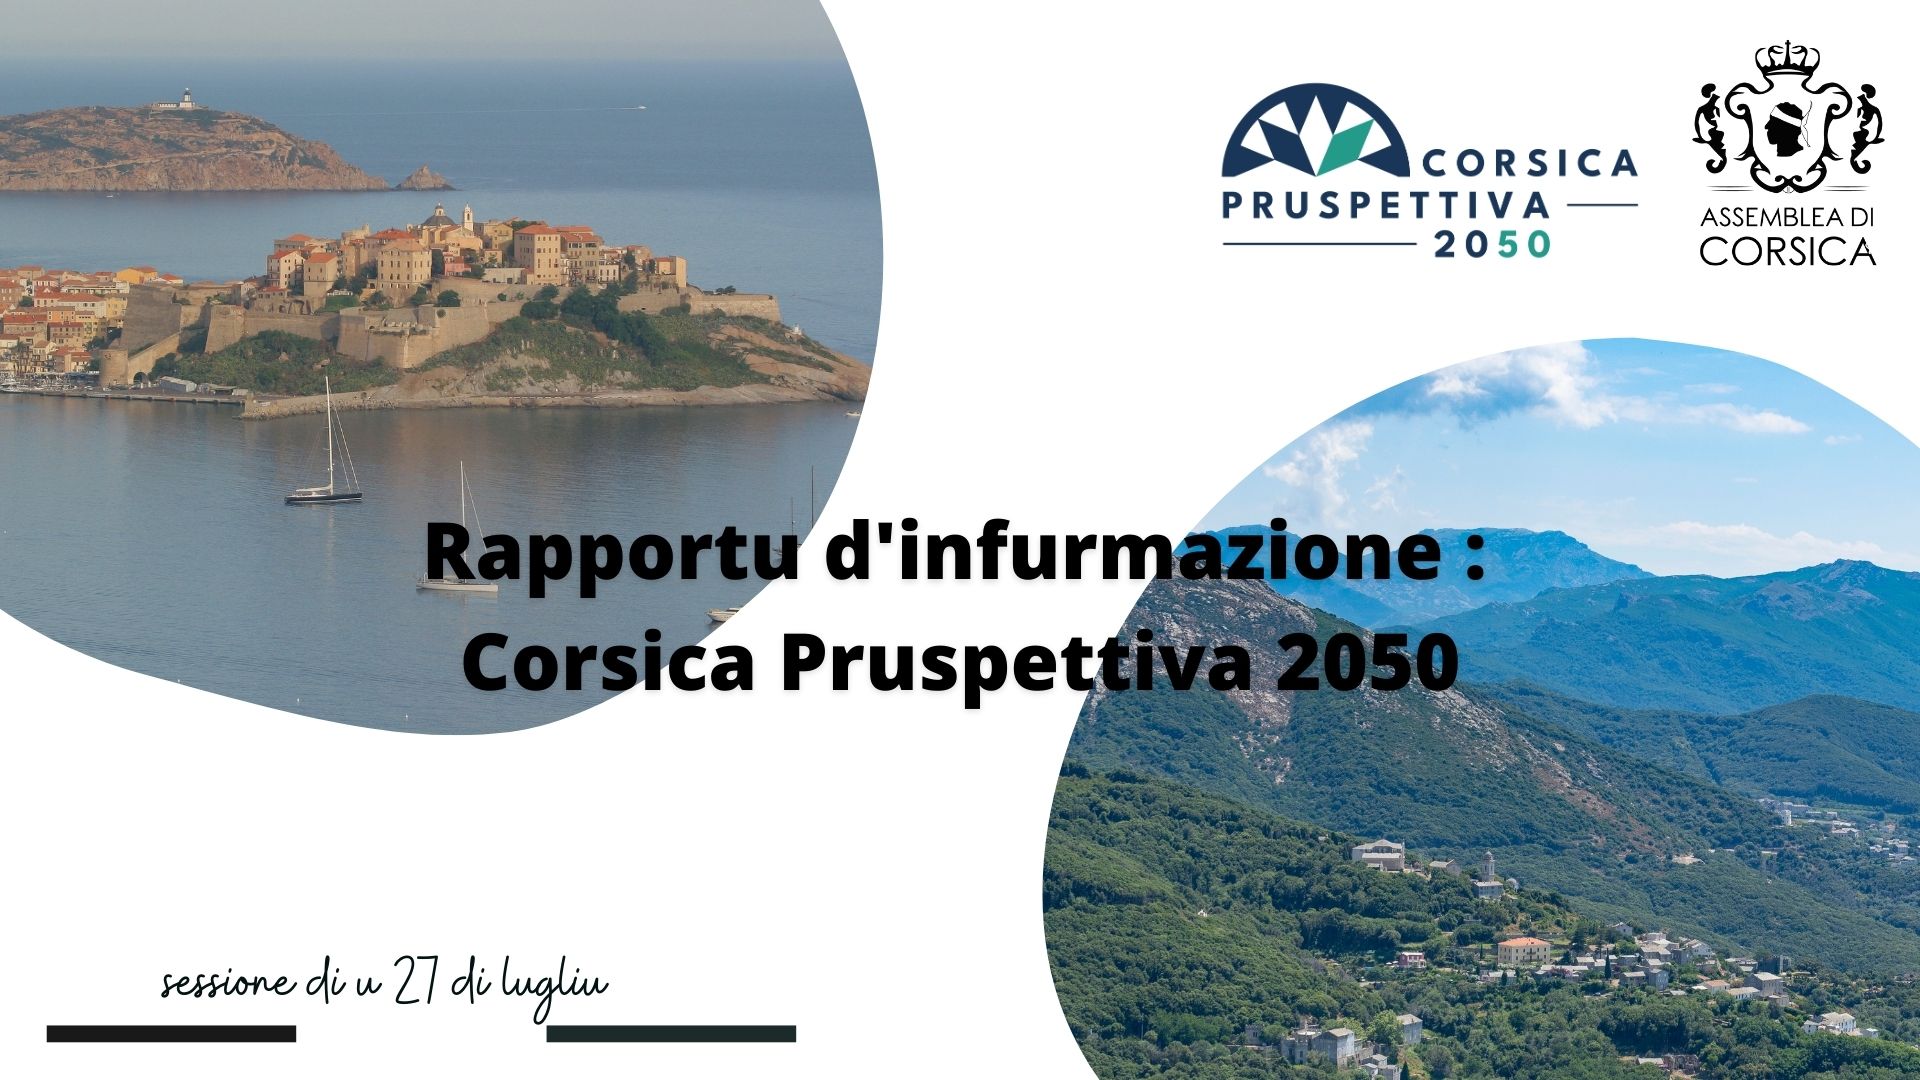 Corsica Pruspettiva 2050 livre ses premiers travaux à l'Assemblée de Corse